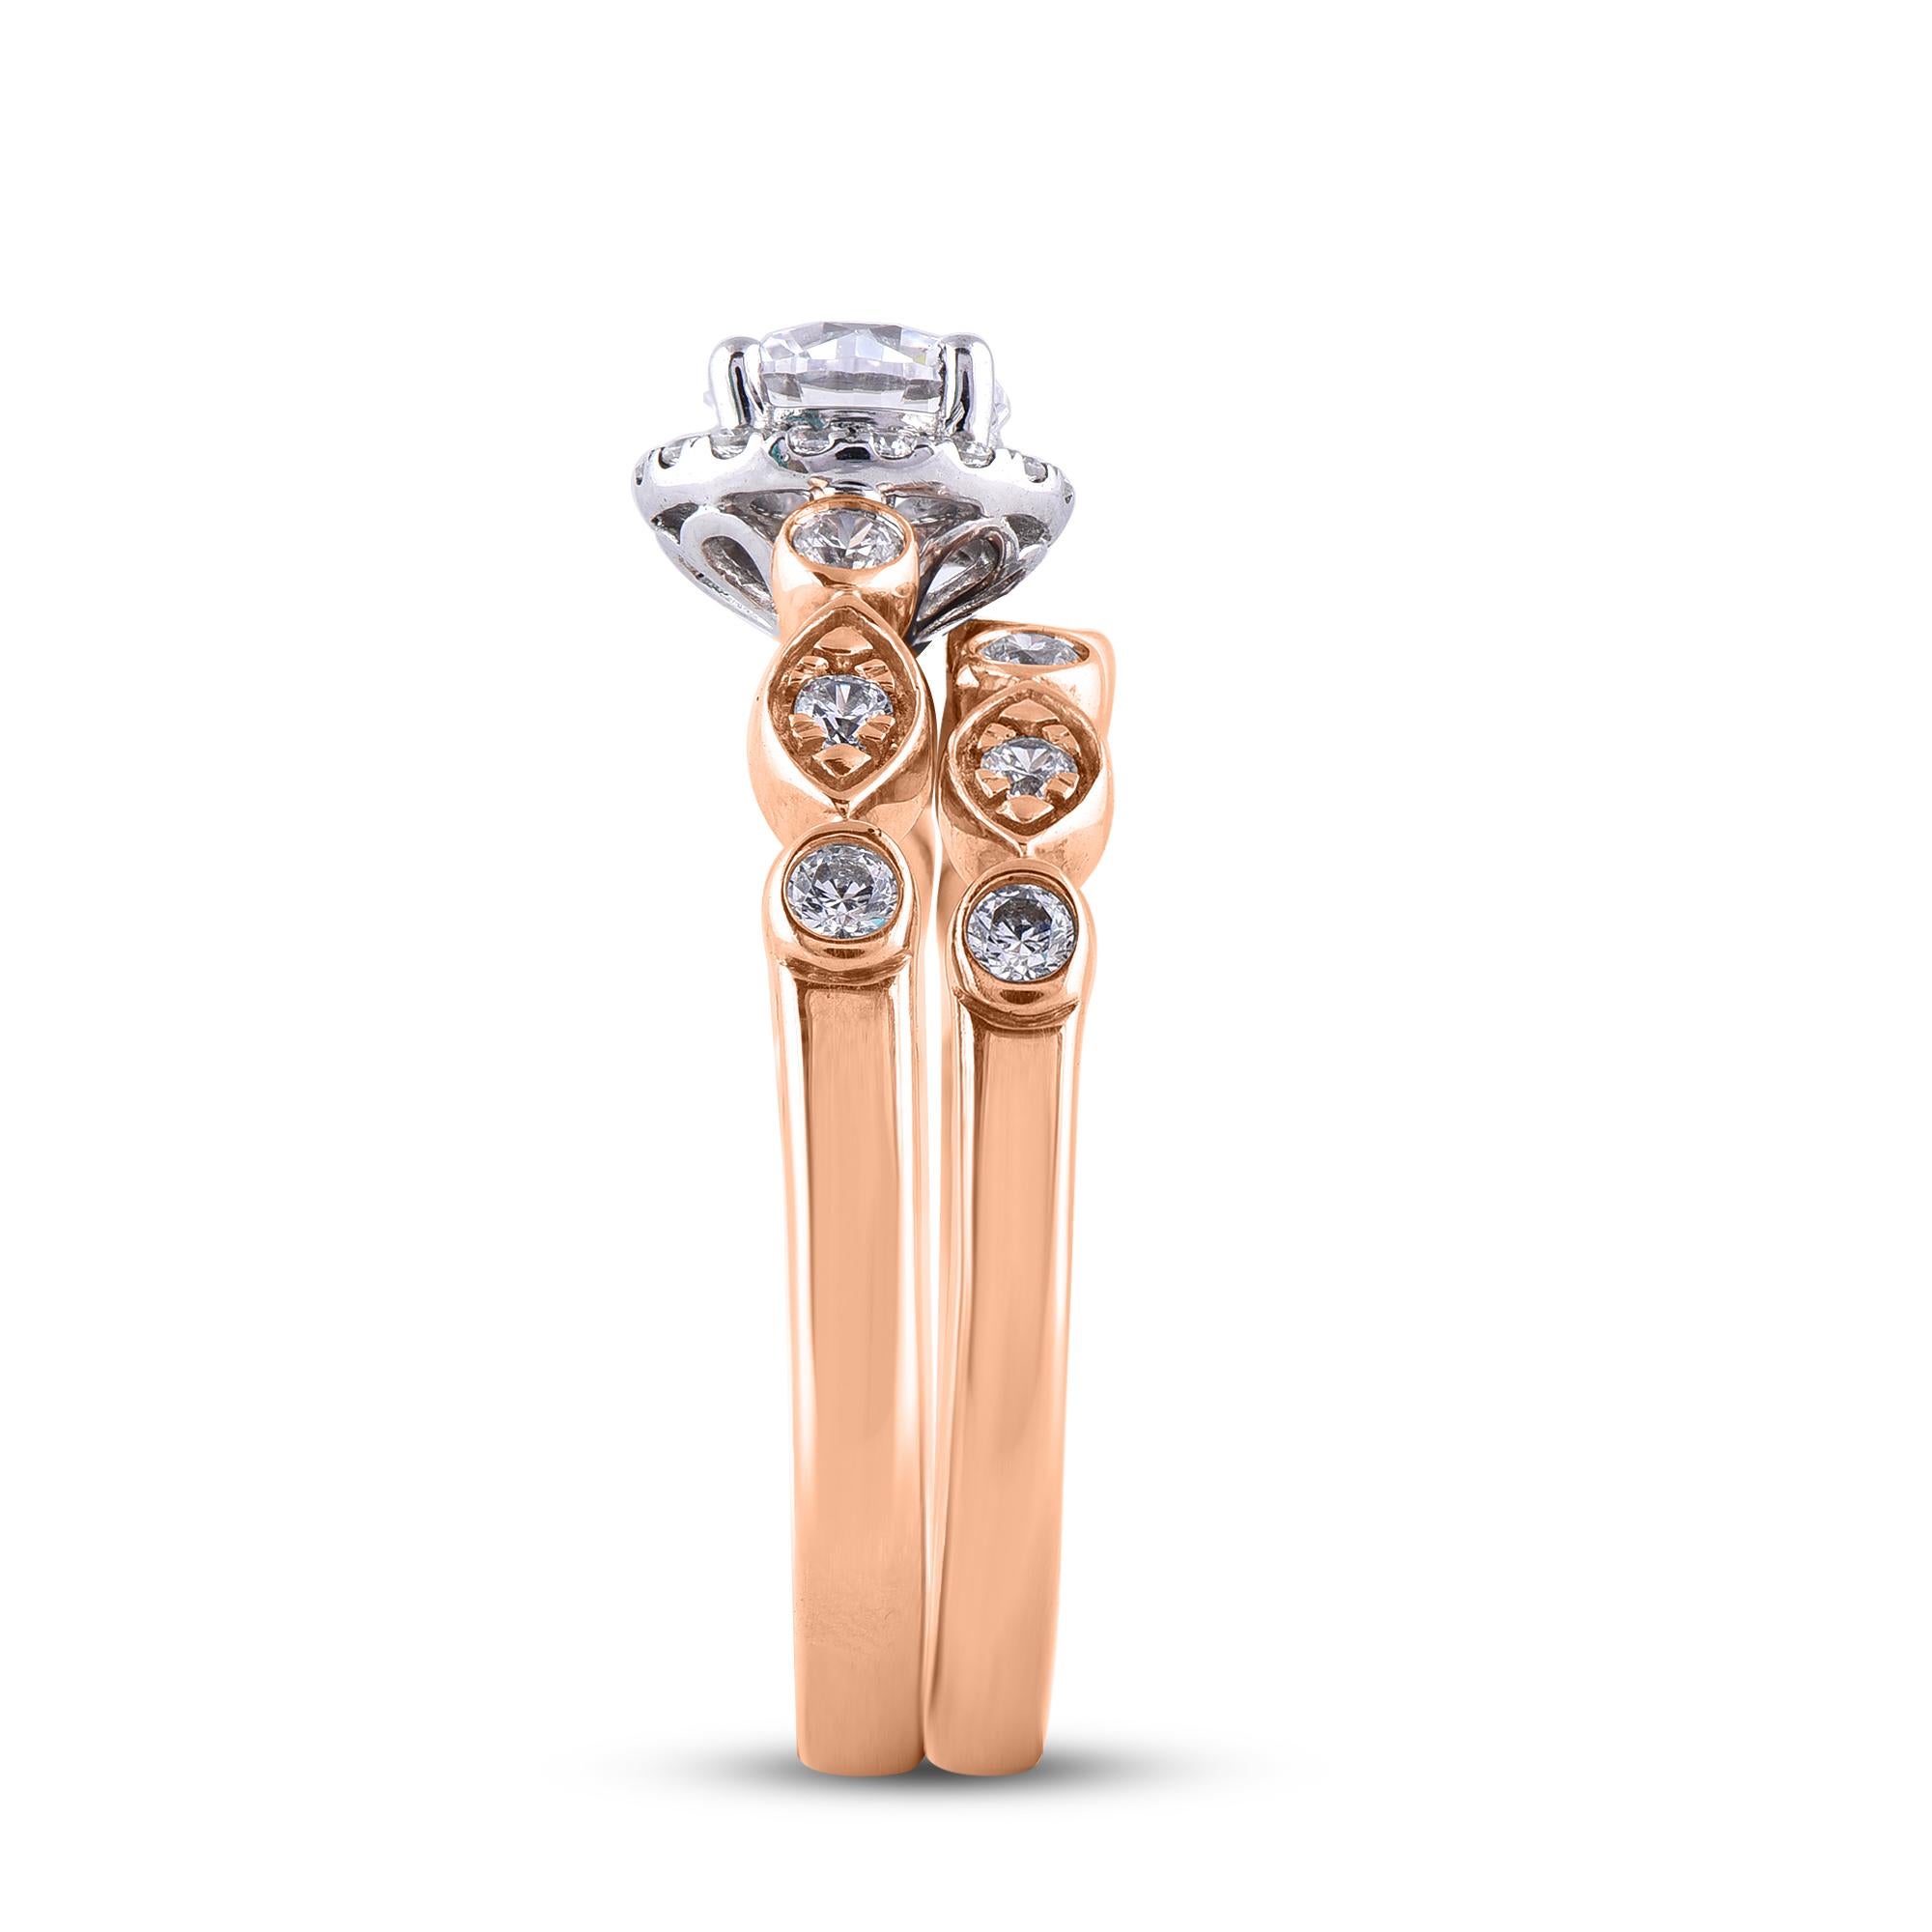 Round Cut TJD 1.20 Carat Round Diamond 18 Karat Rose Gold Halo Designer Bridal Ring Set For Sale